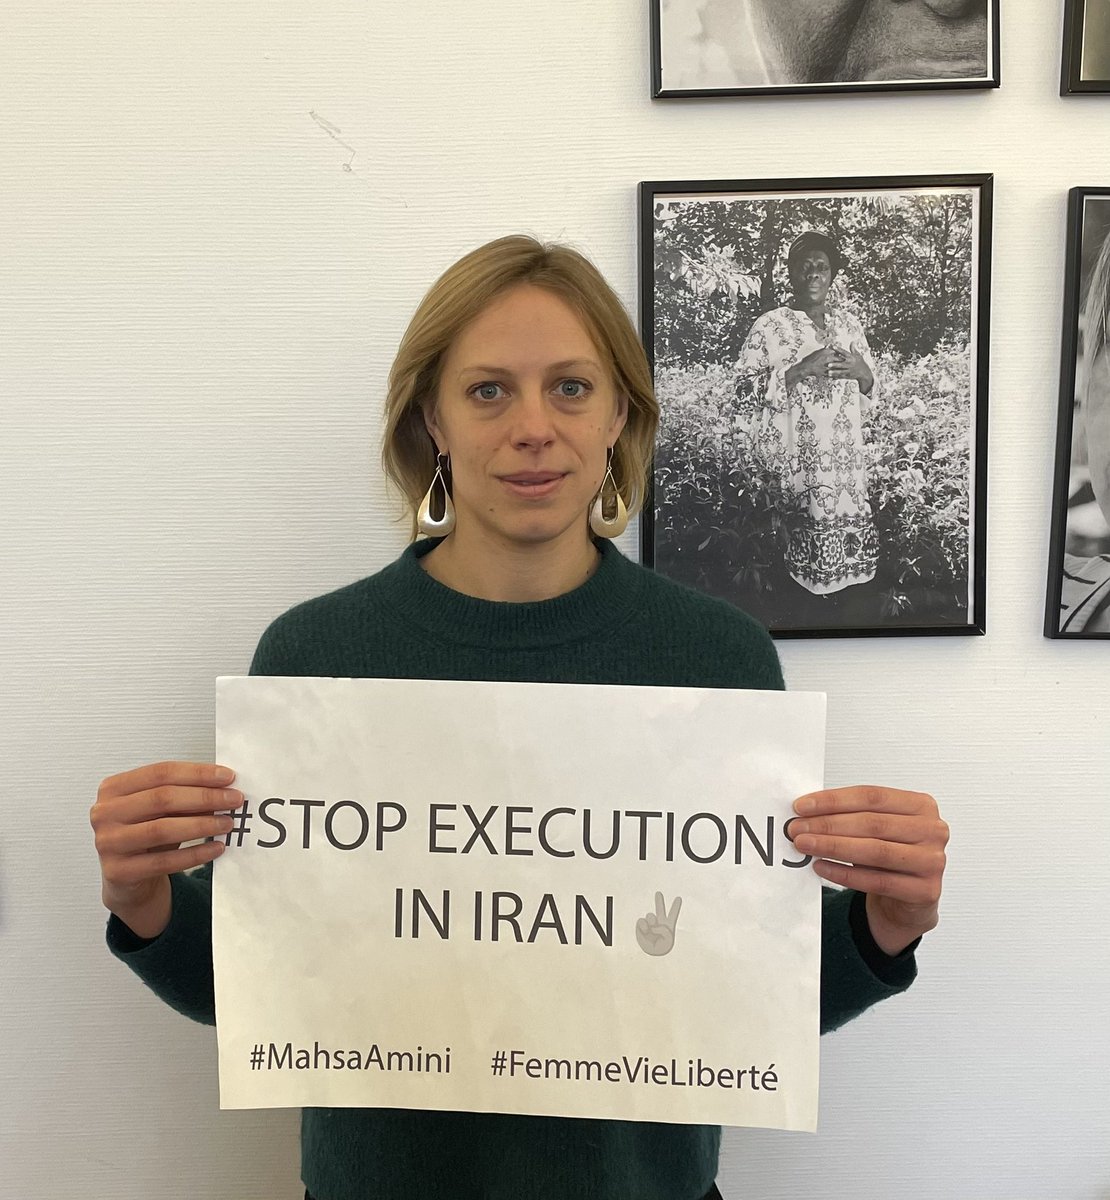 .@anneclaire_boux adjointe à la Maire de #Paris demande annulation condamnation à mort et Liberation immédiate #MohamadBroghani #MohammadGhobadlu et de tous les detenuEs politiques #StopExecutionsInIran #IranRevolution